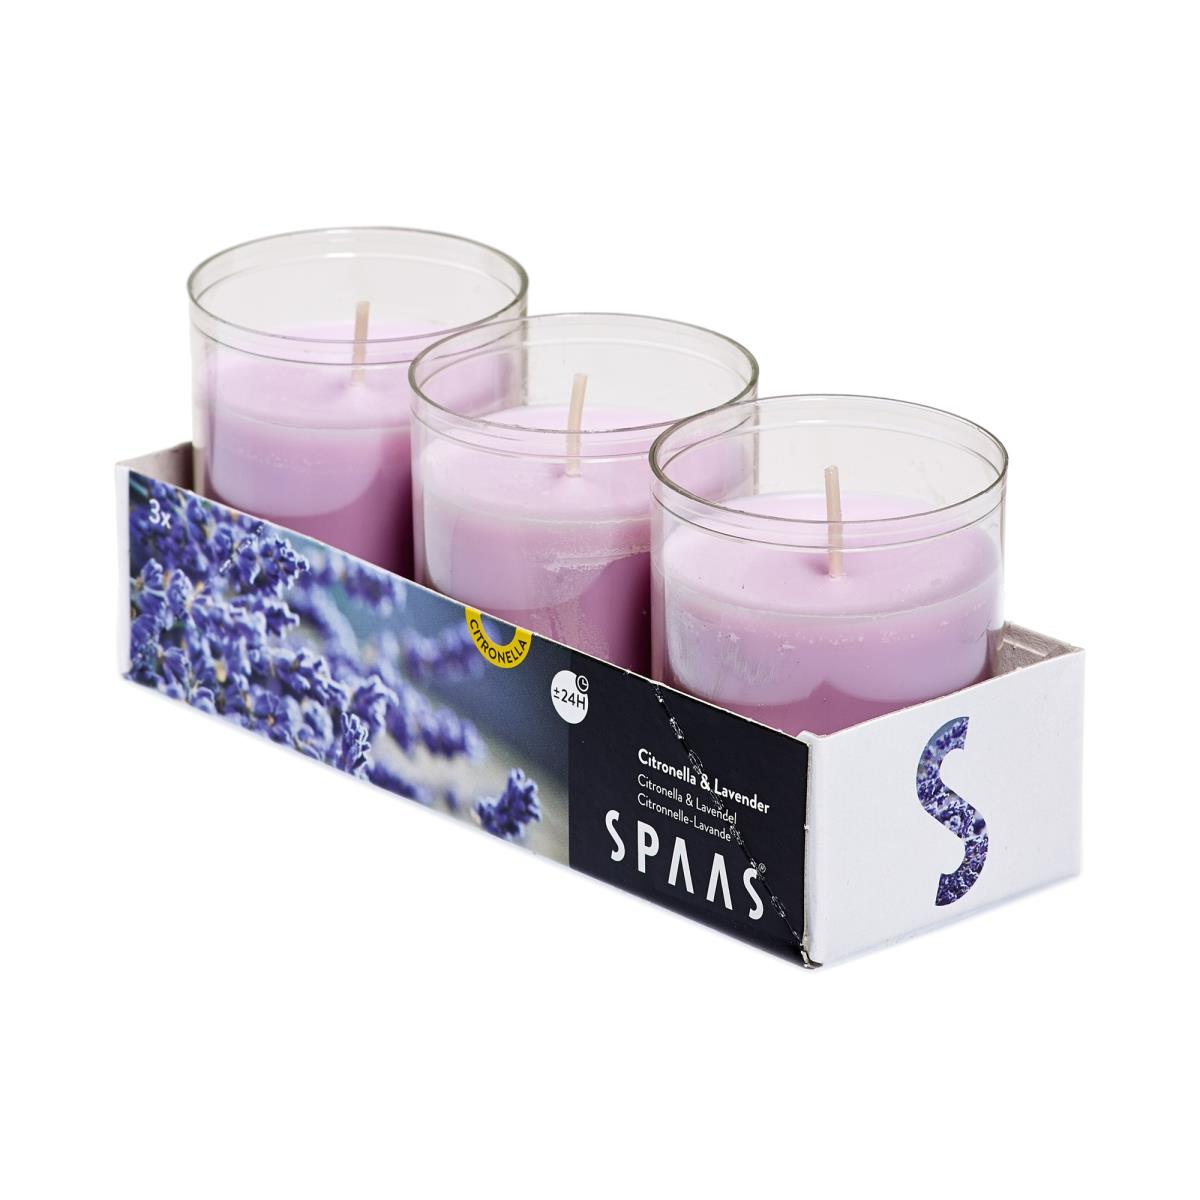 4 x Citronella Lavendel Duftlichter Anti Mücken Kerzen Teelichter Mückenabwehr ,Spaas,000051332868, 0676424768965